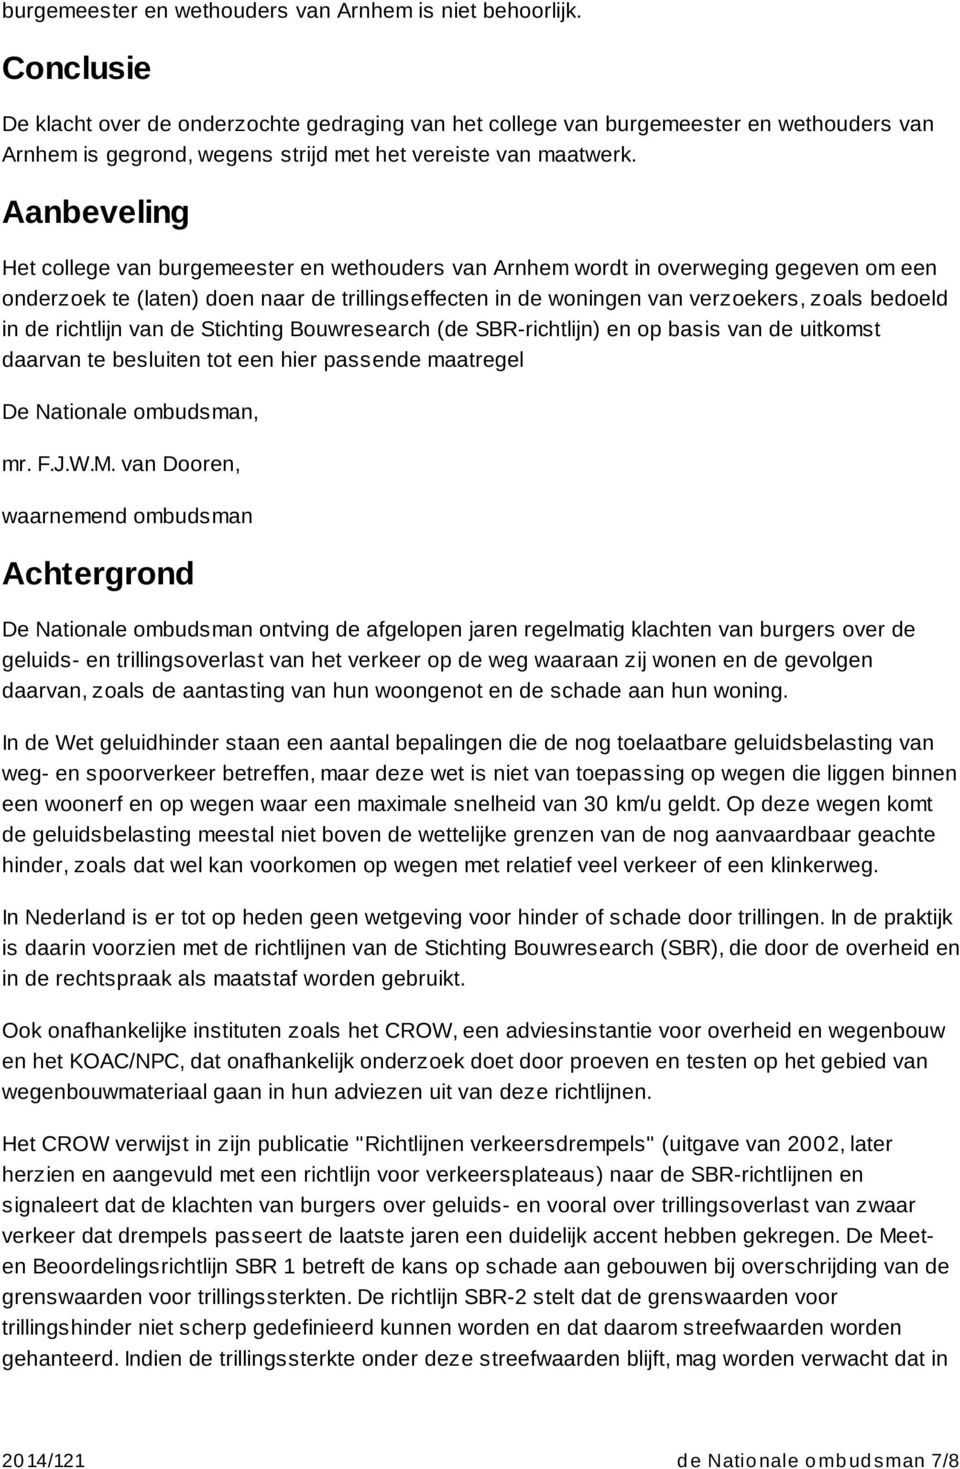 Aanbeveling Het college van burgemeester en wethouders van Arnhem wordt in overweging gegeven om een onderzoek te (laten) doen naar de trillingseffecten in de woningen van verzoekers, zoals bedoeld